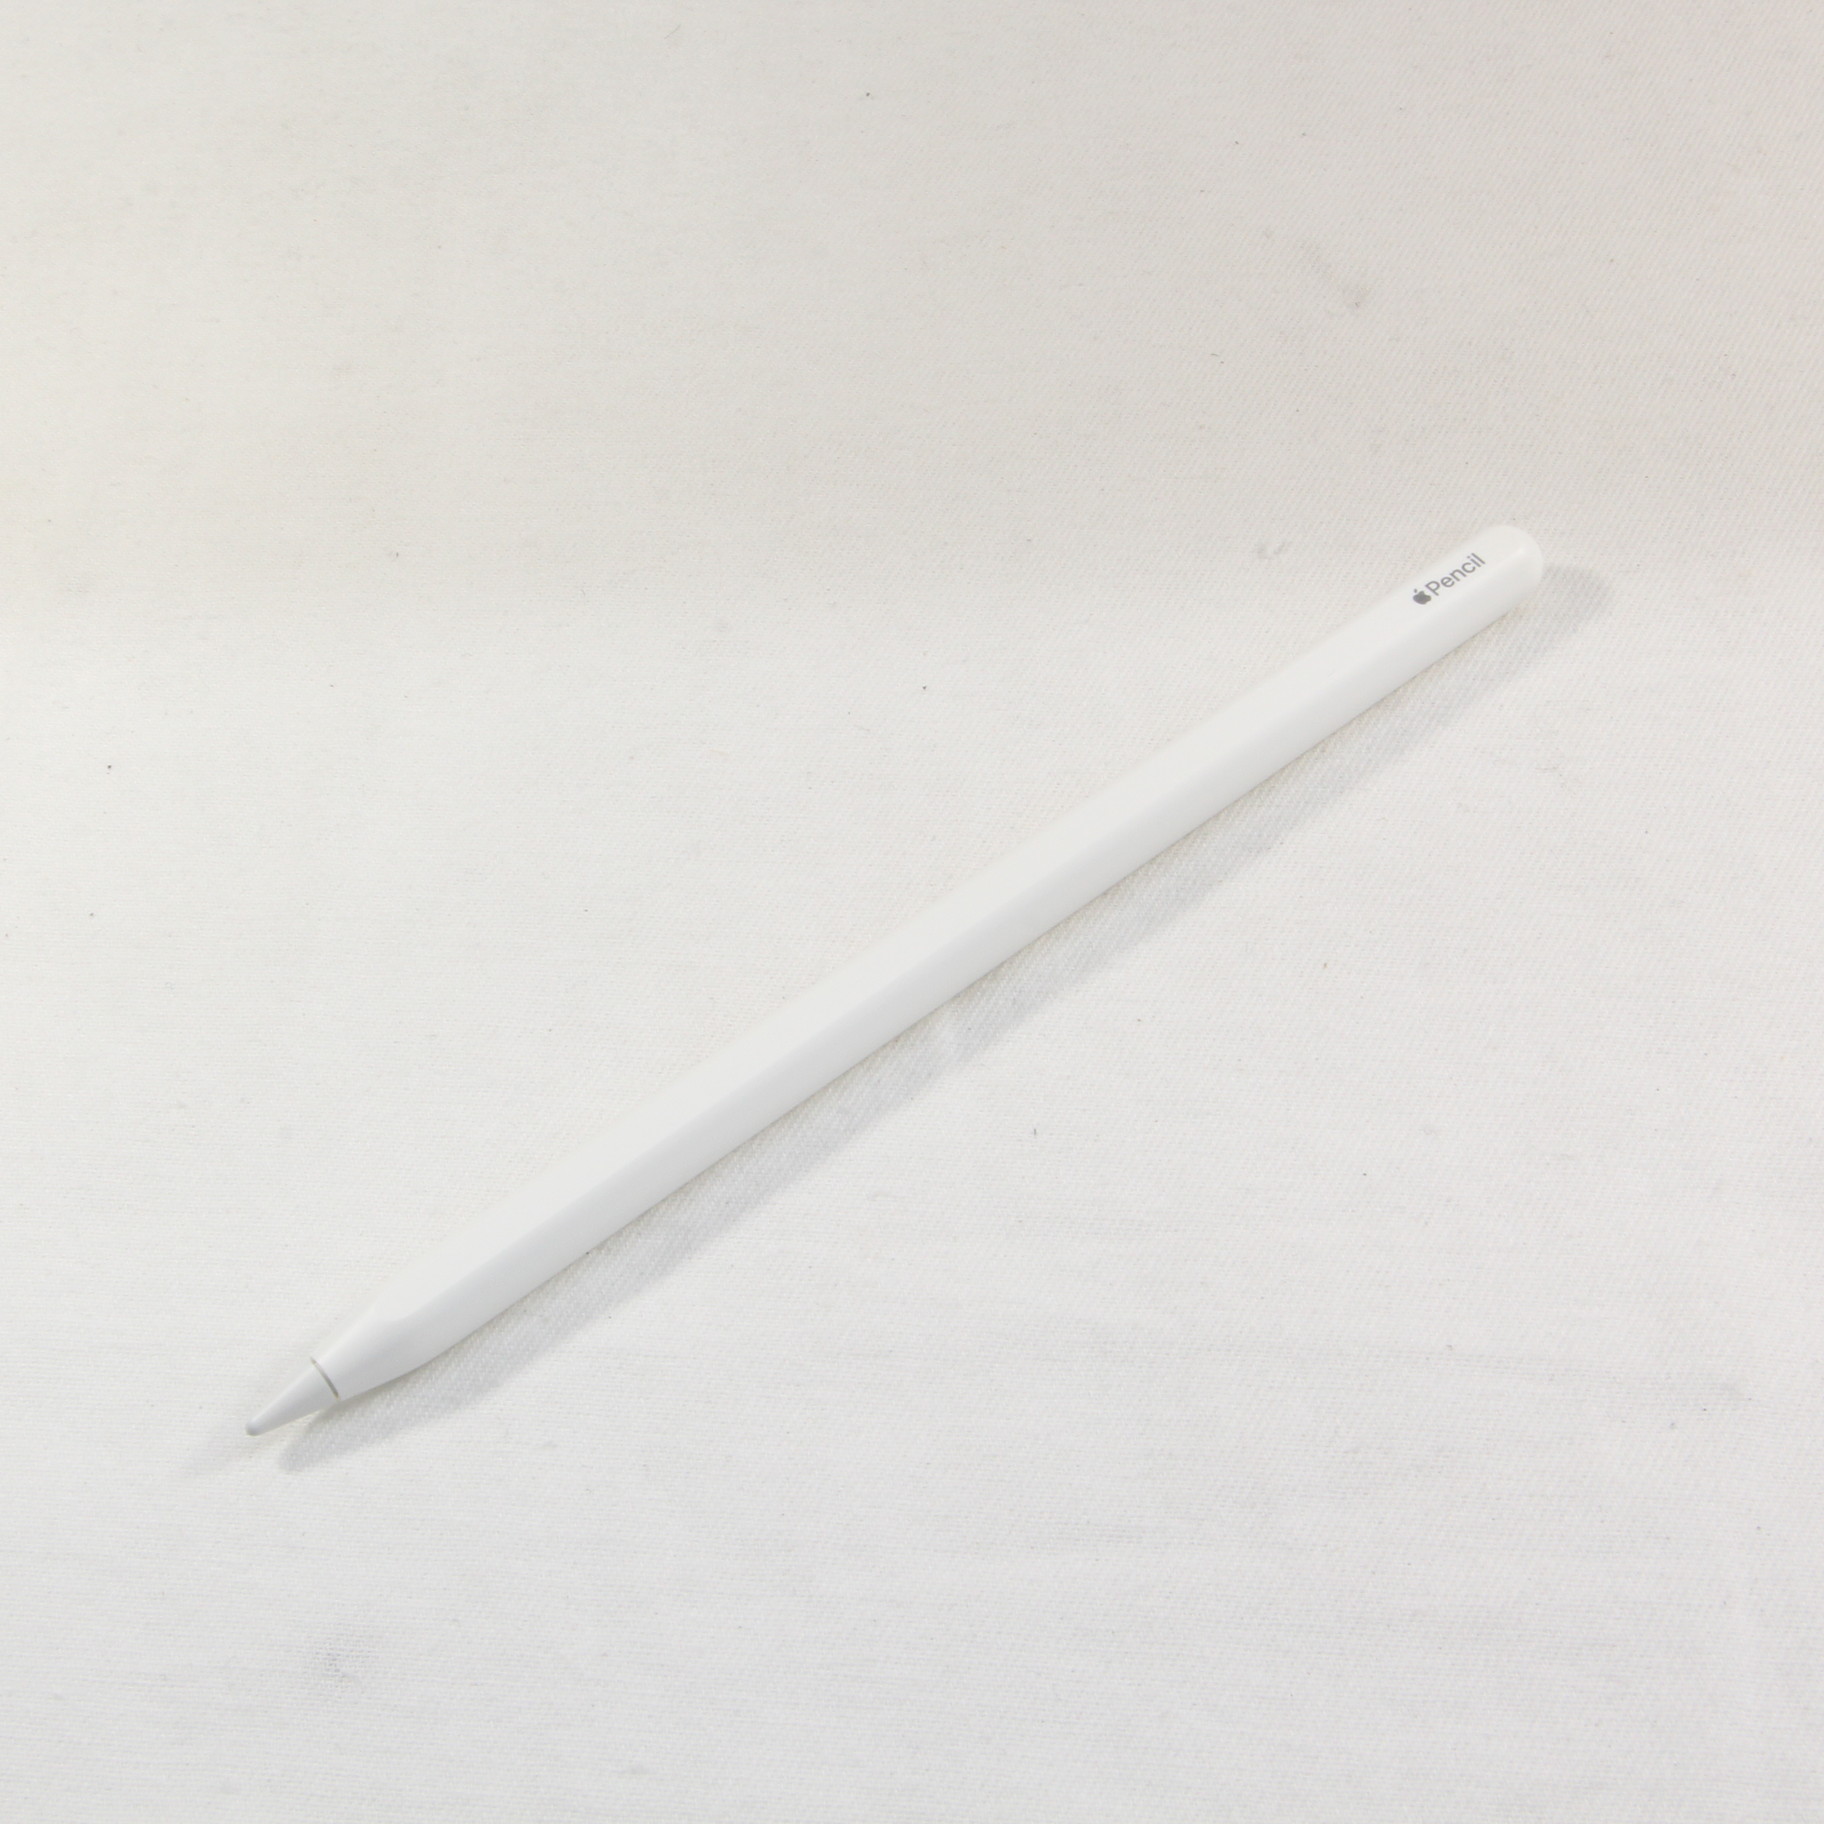 公認店 ★【中古】APPLE Apple Pencil 第2世代 MU8F2J/A(A2051) 元箱あり [管理:1050011580